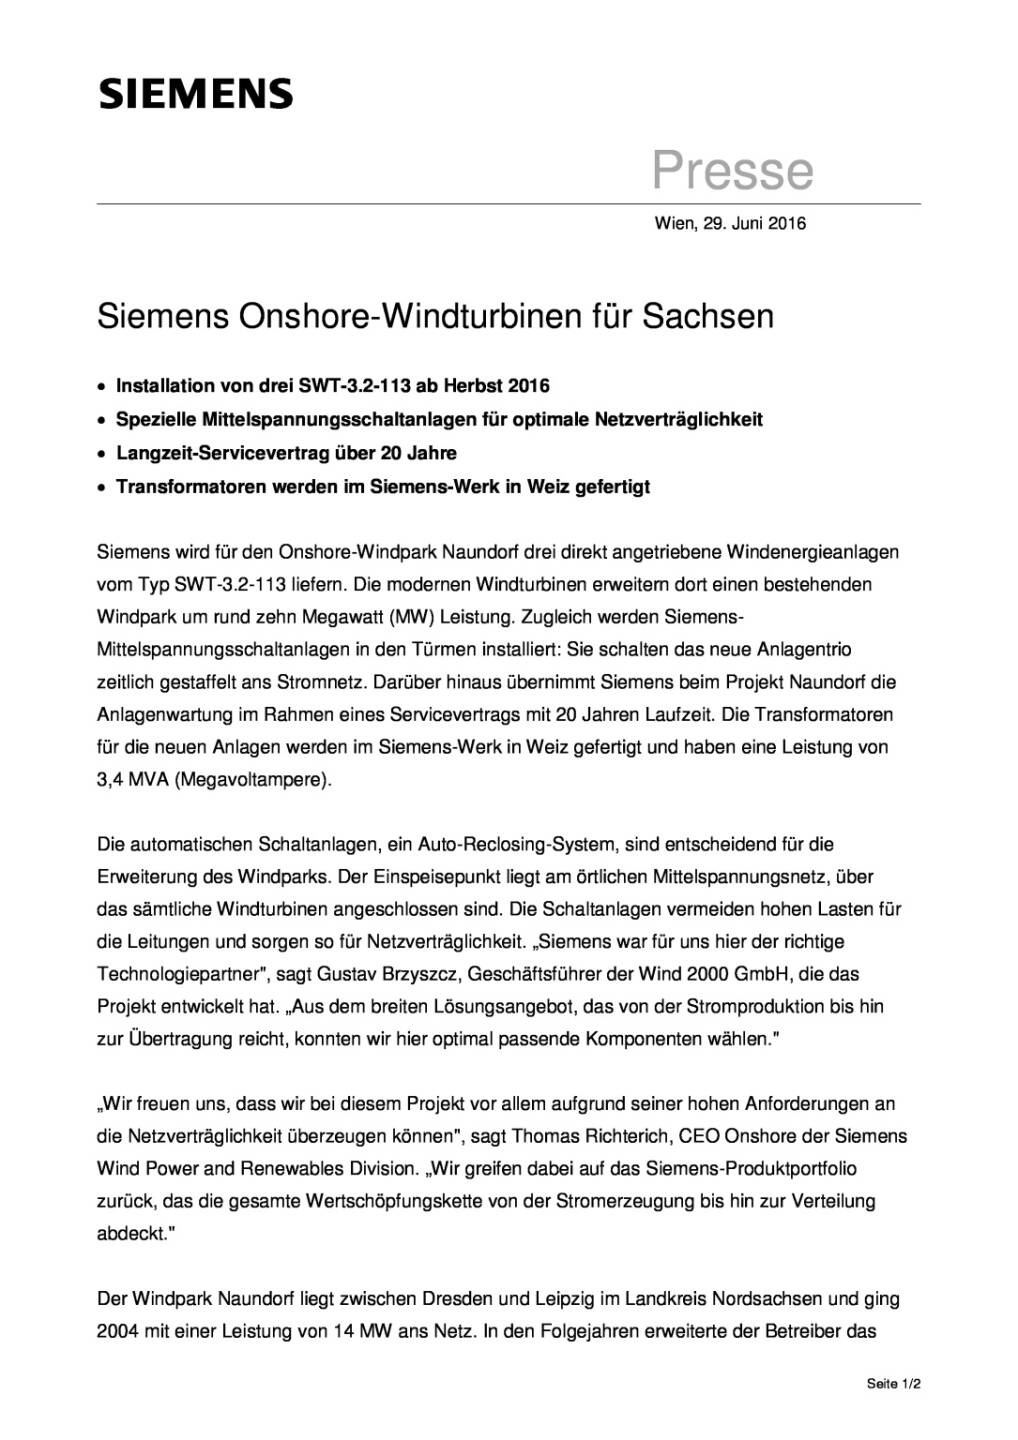 Siemens Onshore-Windturbinen für Sachsen, Seite 1/2, komplettes Dokument unter http://boerse-social.com/static/uploads/file_1296_siemens_onshore-windturbinen_fur_sachsen.pdf